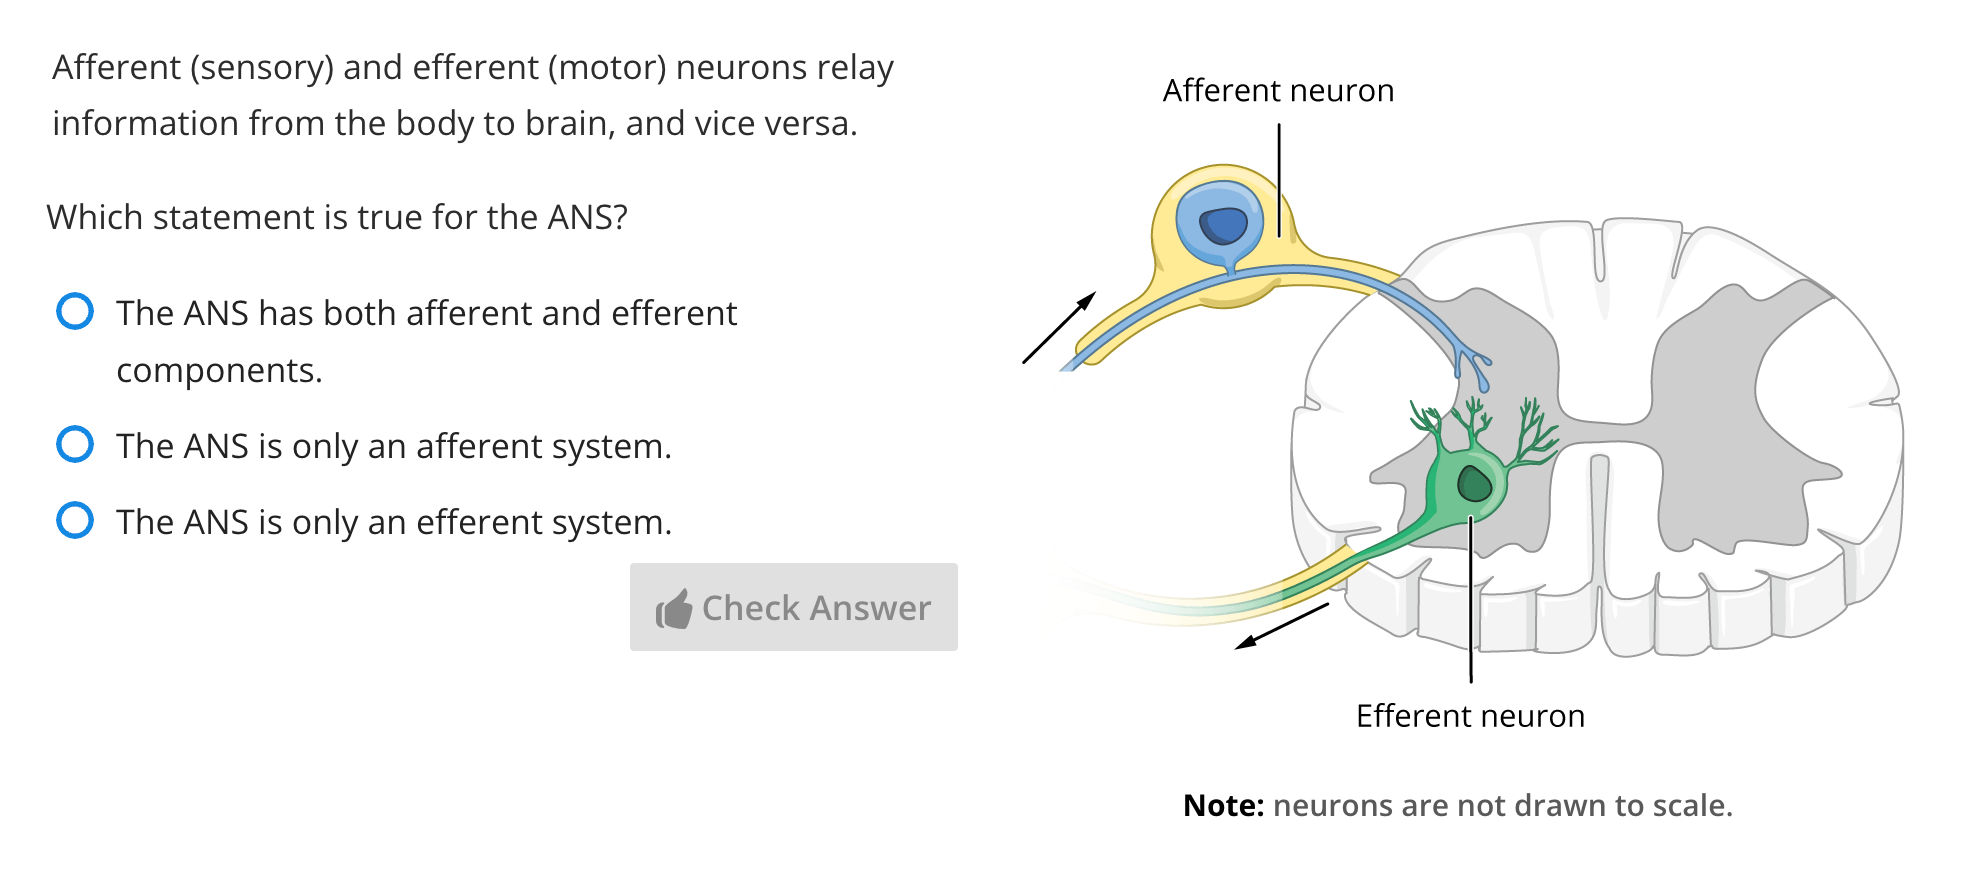 A multiple-choice question on the autonomic nervous system.